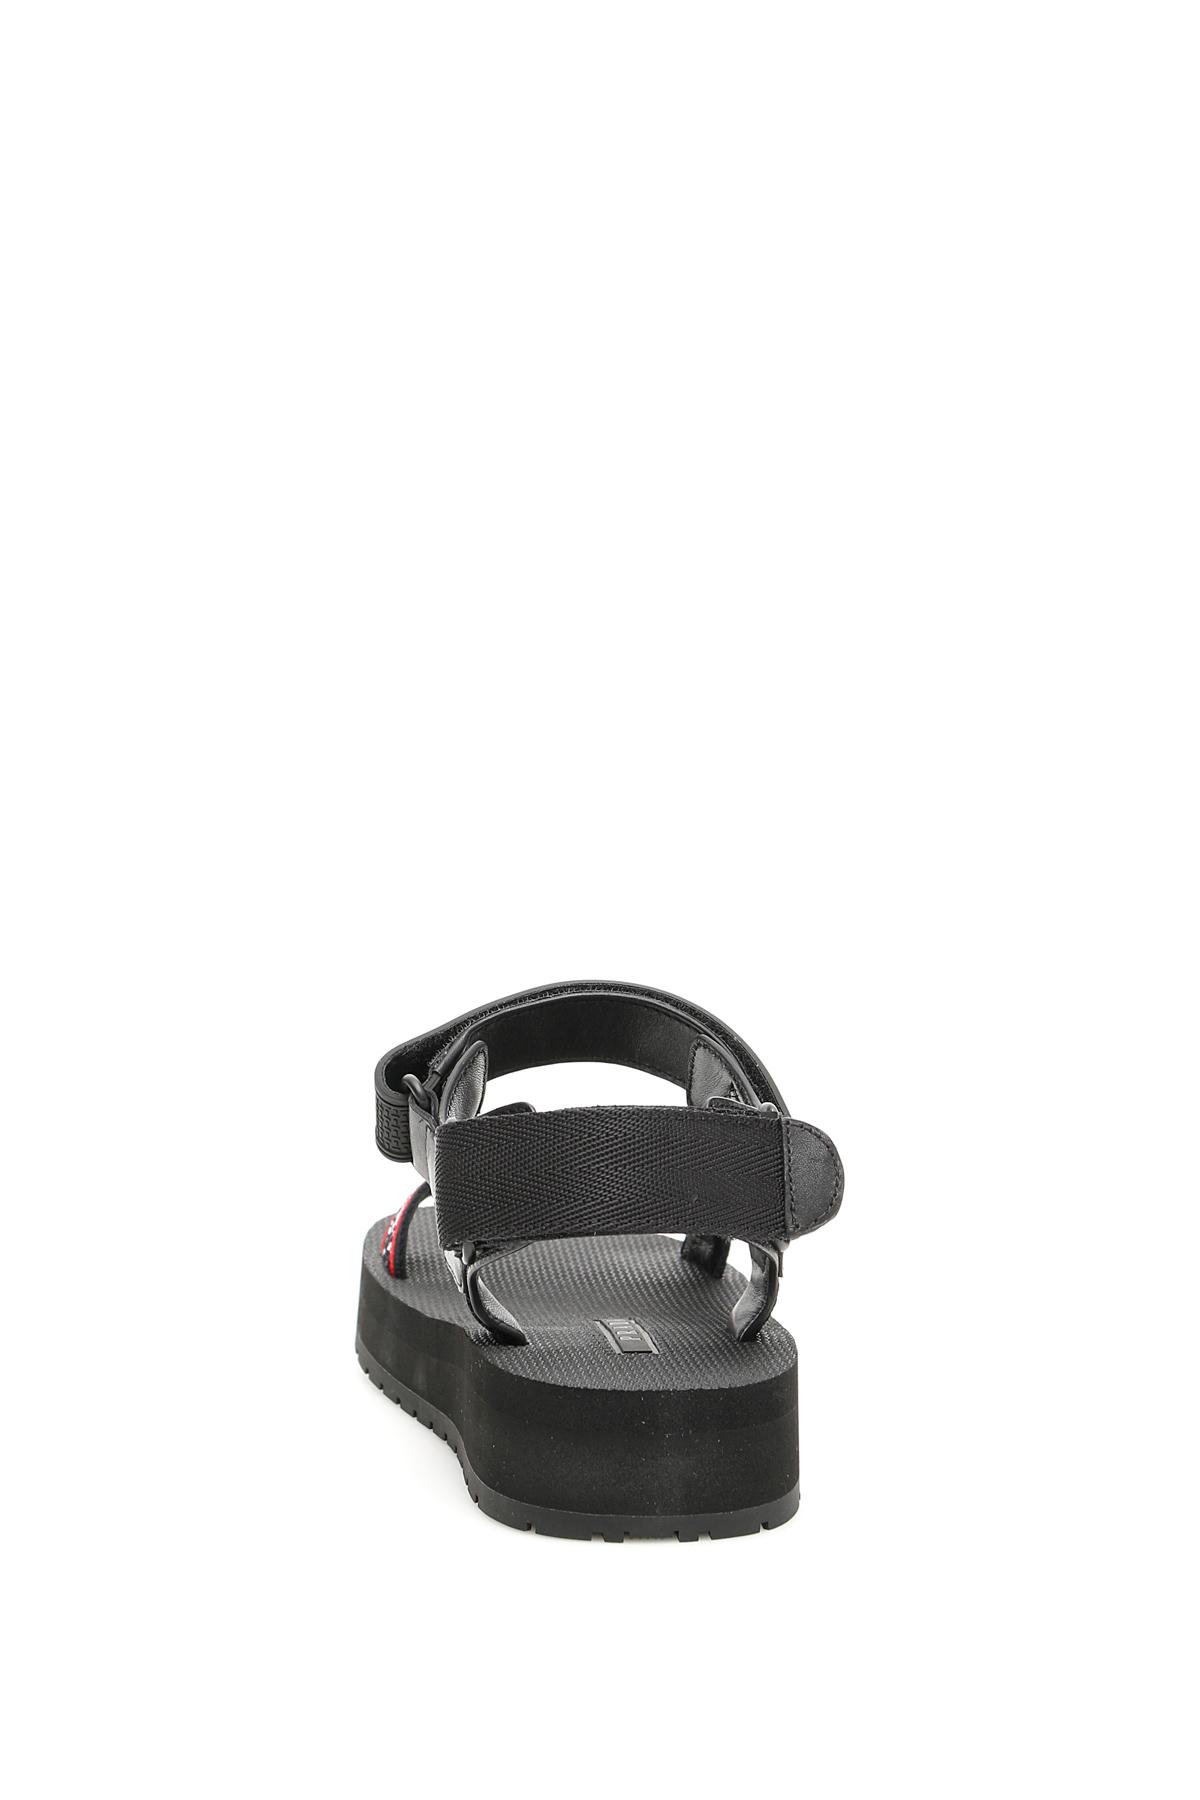 Prada Logo Nomad Sandals in Black | Lyst